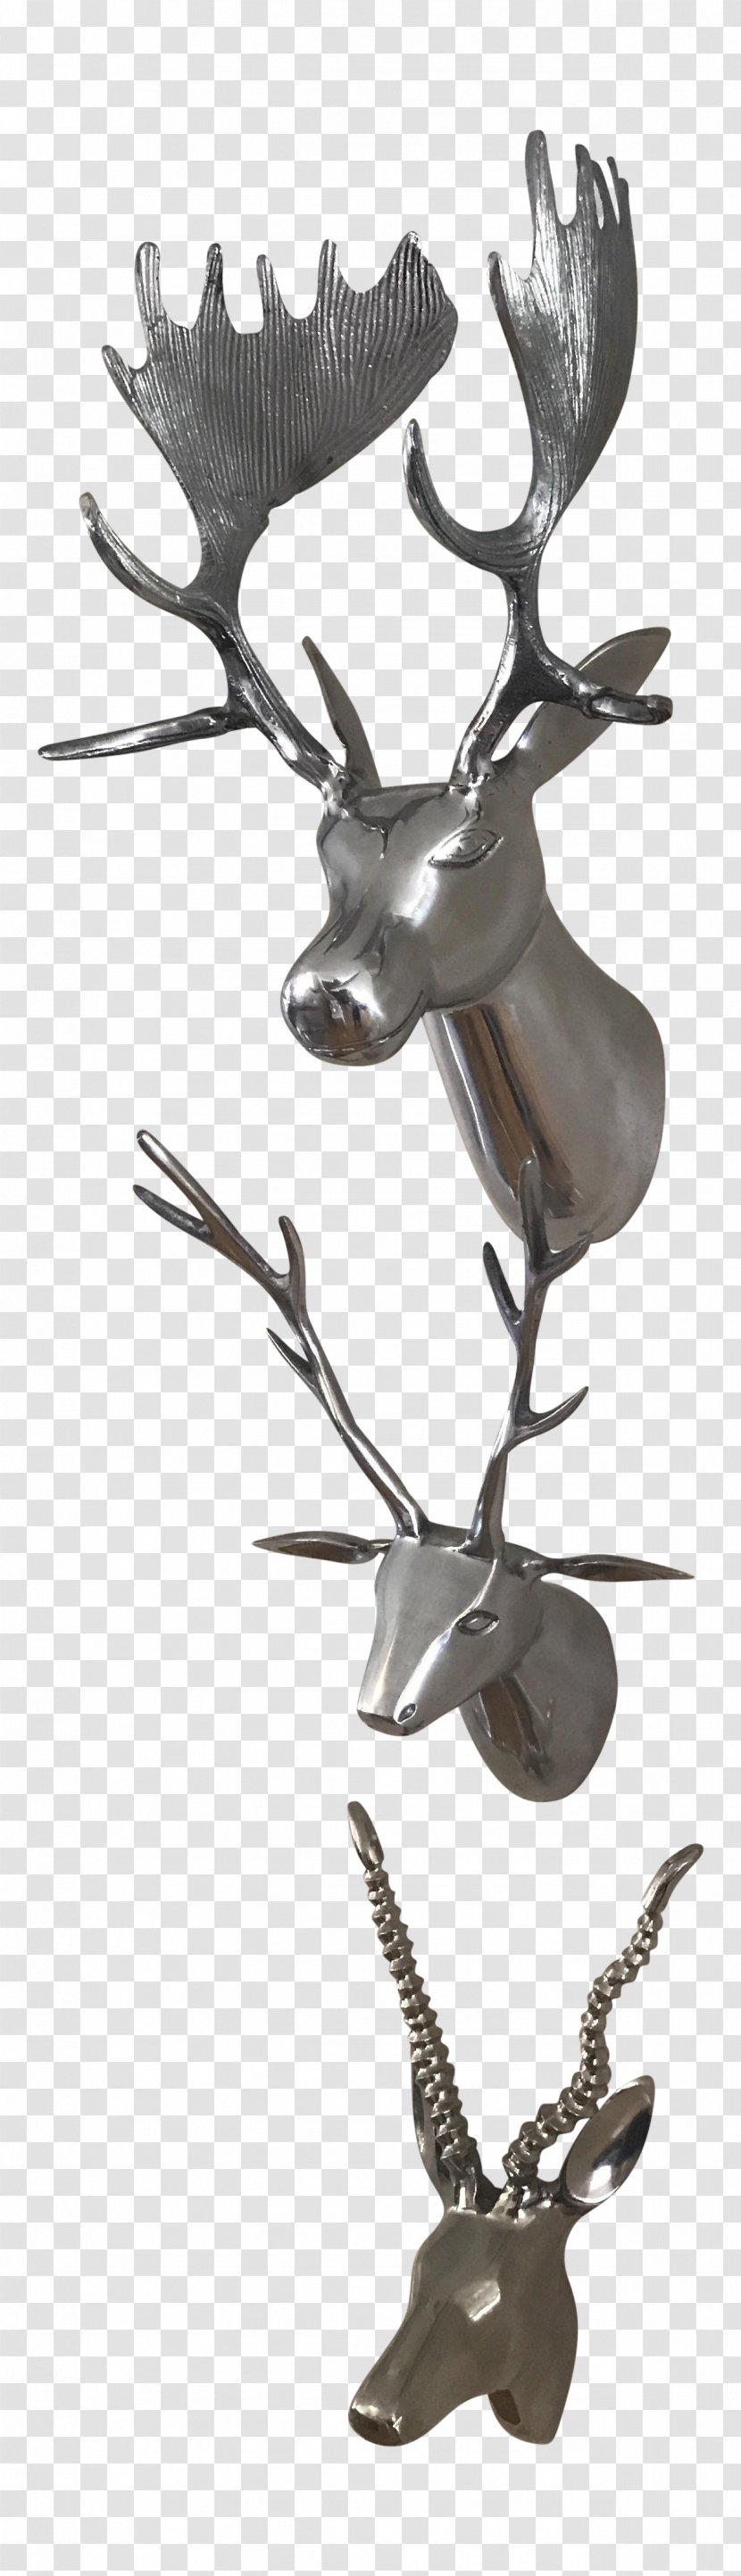 Silver Metal Reindeer Taxidermy Animal - Deer Horns Transparent PNG